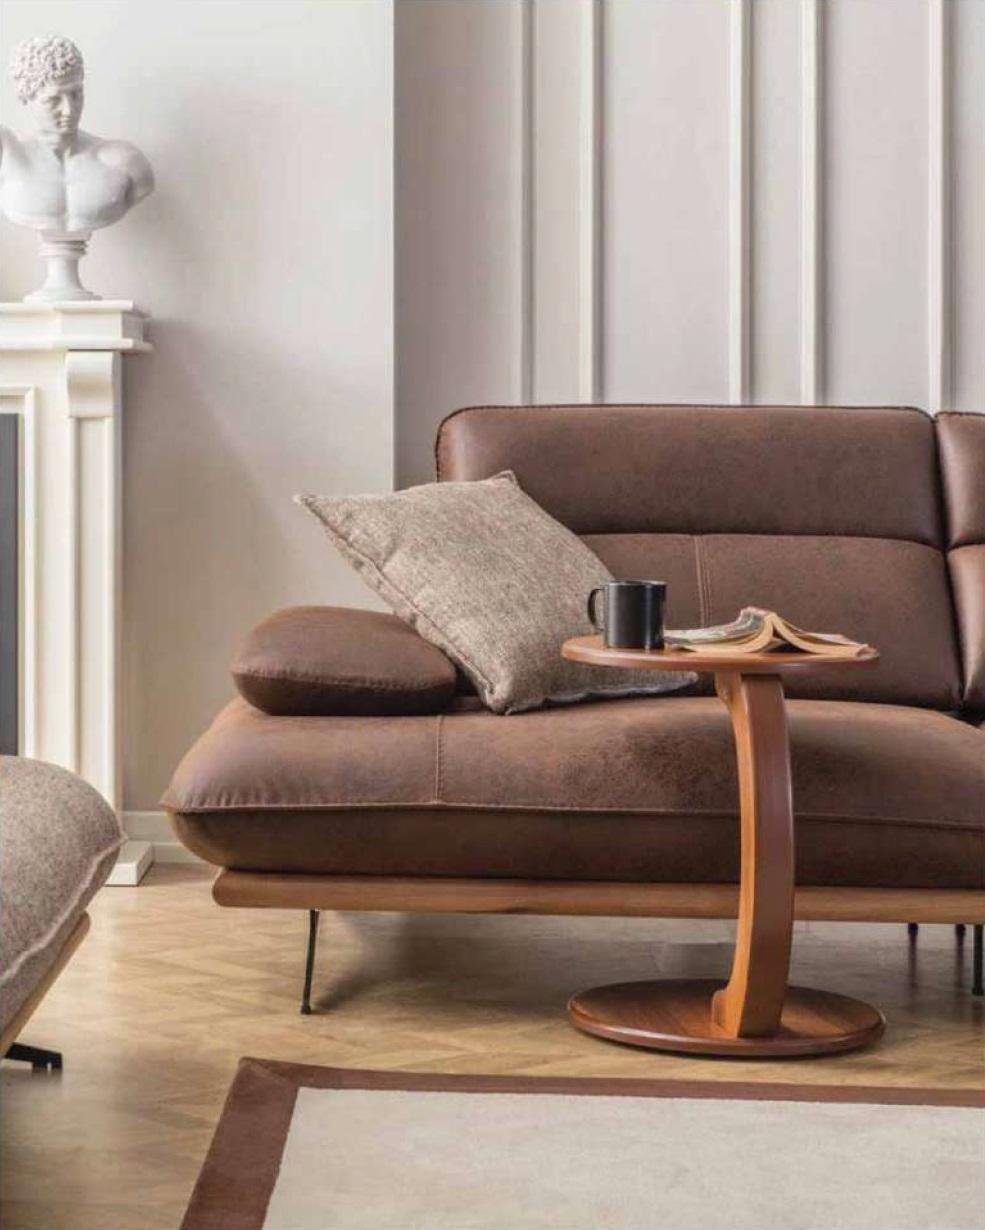 JVmoebel Sofa Viersitziges Sofa 4 Sitzer Luxus, 1 Wohnzimmer Sofas Braun Teile Kunstleder